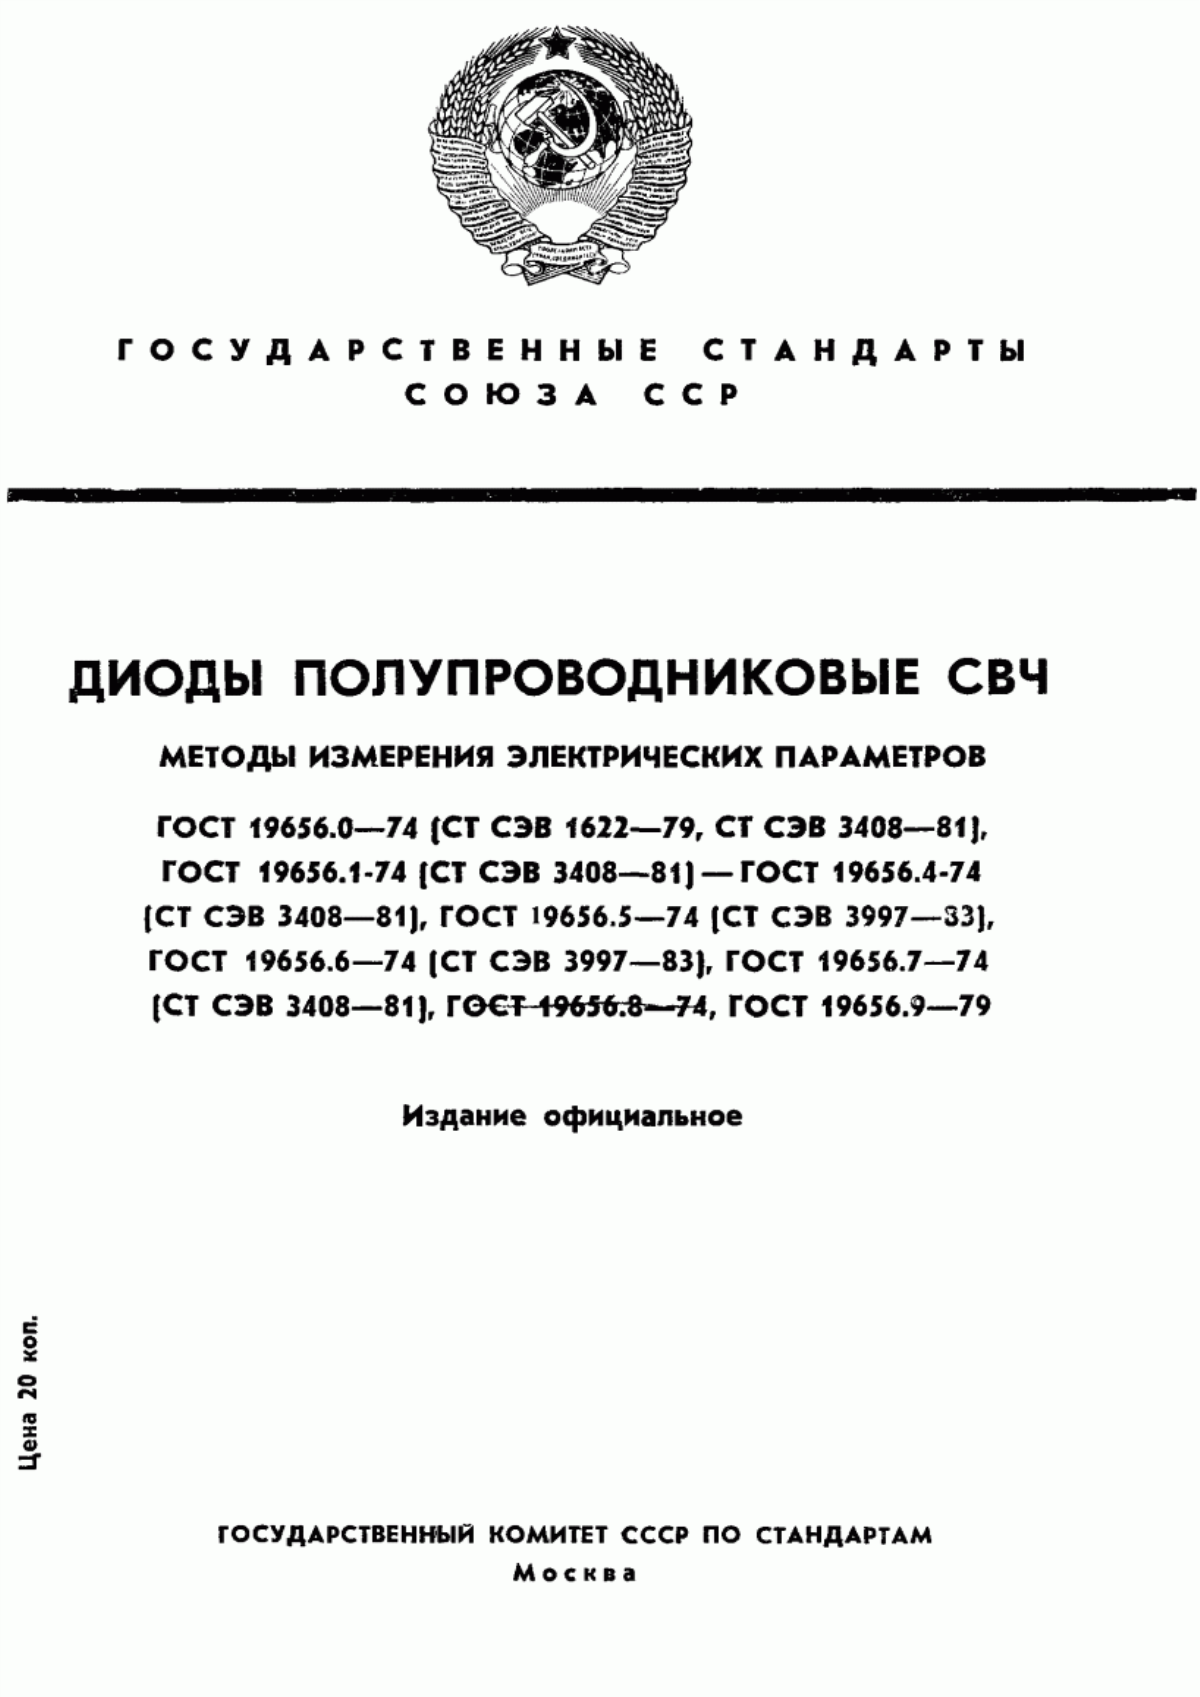 ГОСТ 19656.0-74 Диоды полупроводниковые СВЧ. Методы измерения электрических параметров. Общие положения